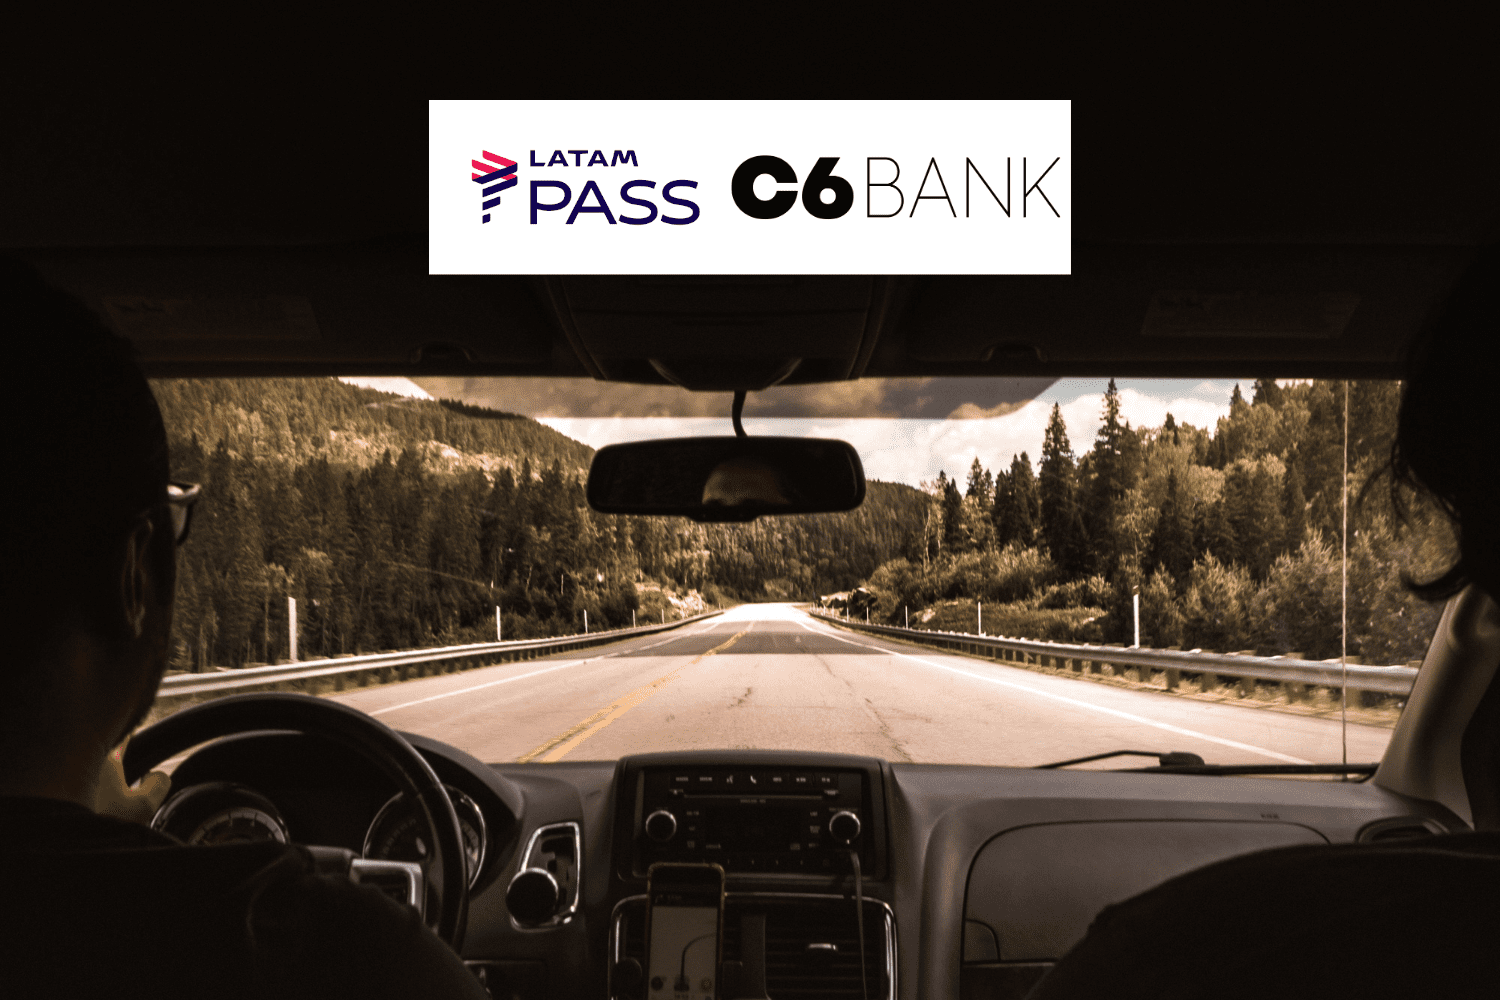 viagem de carro com logo Latam Pass e C6 Bank bônus Latam Pass